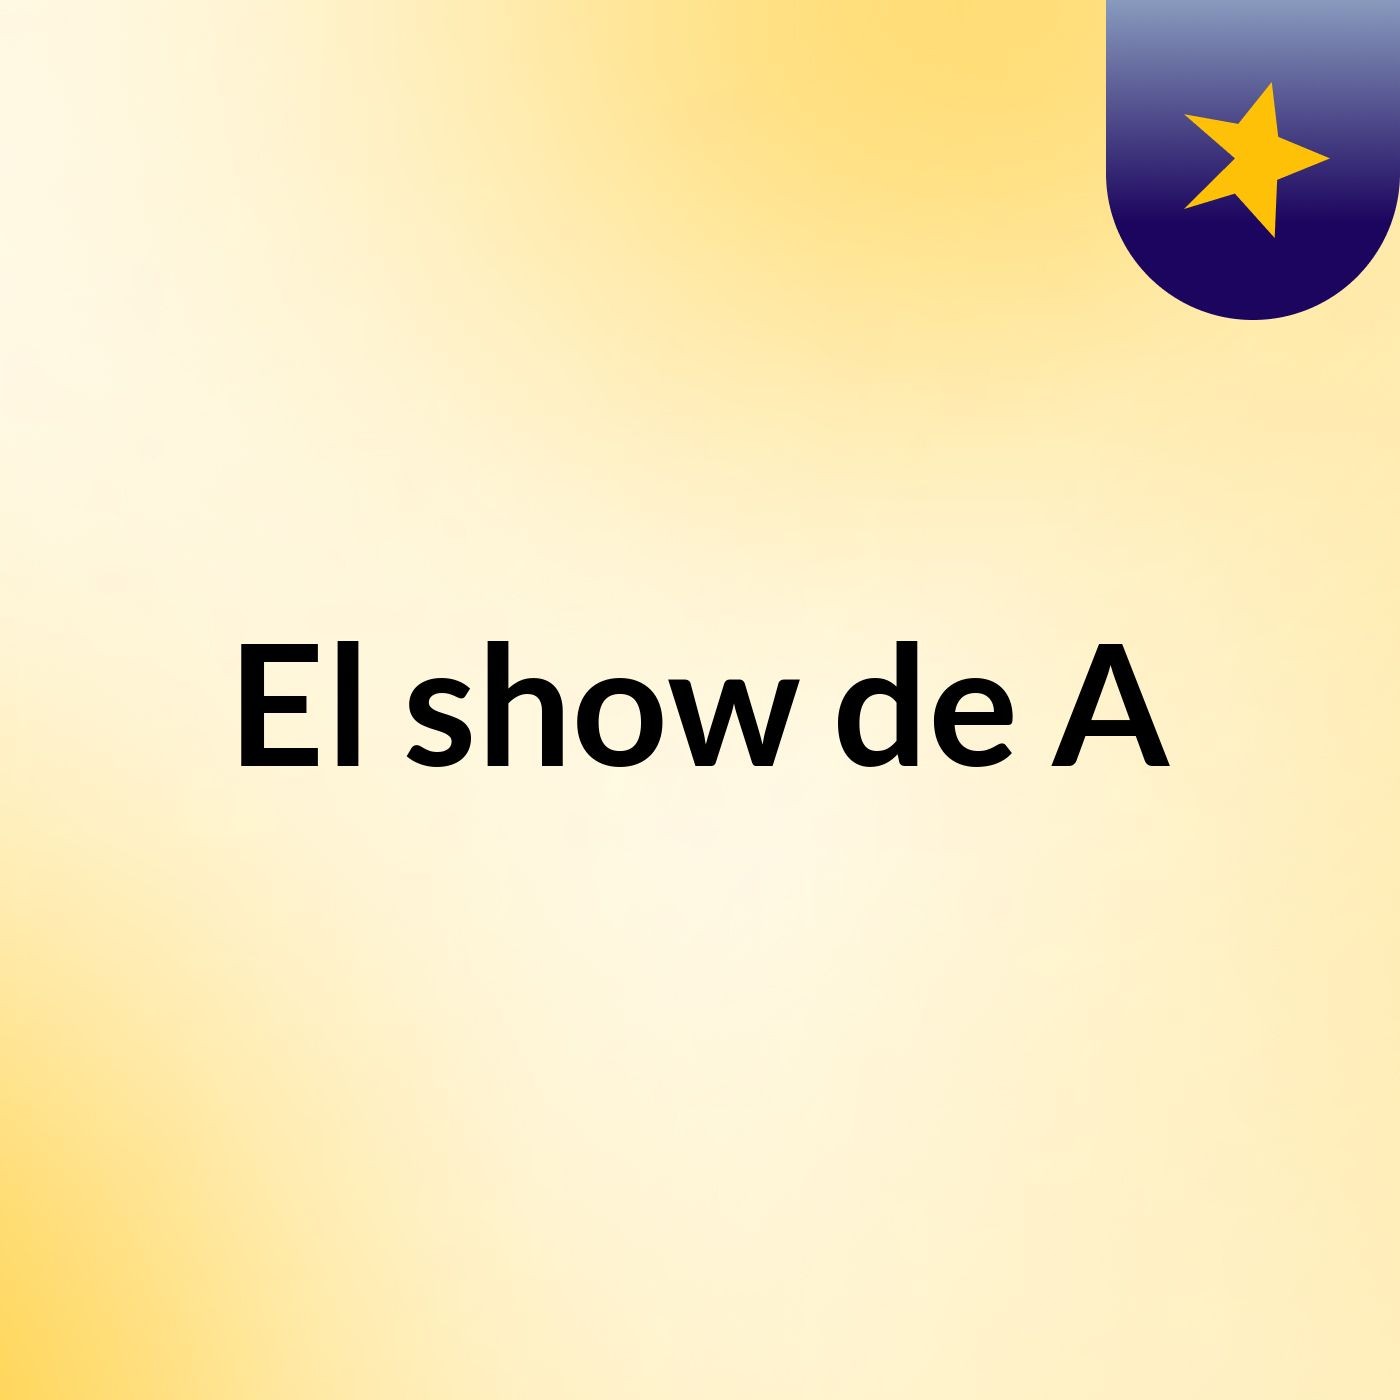 El show de A